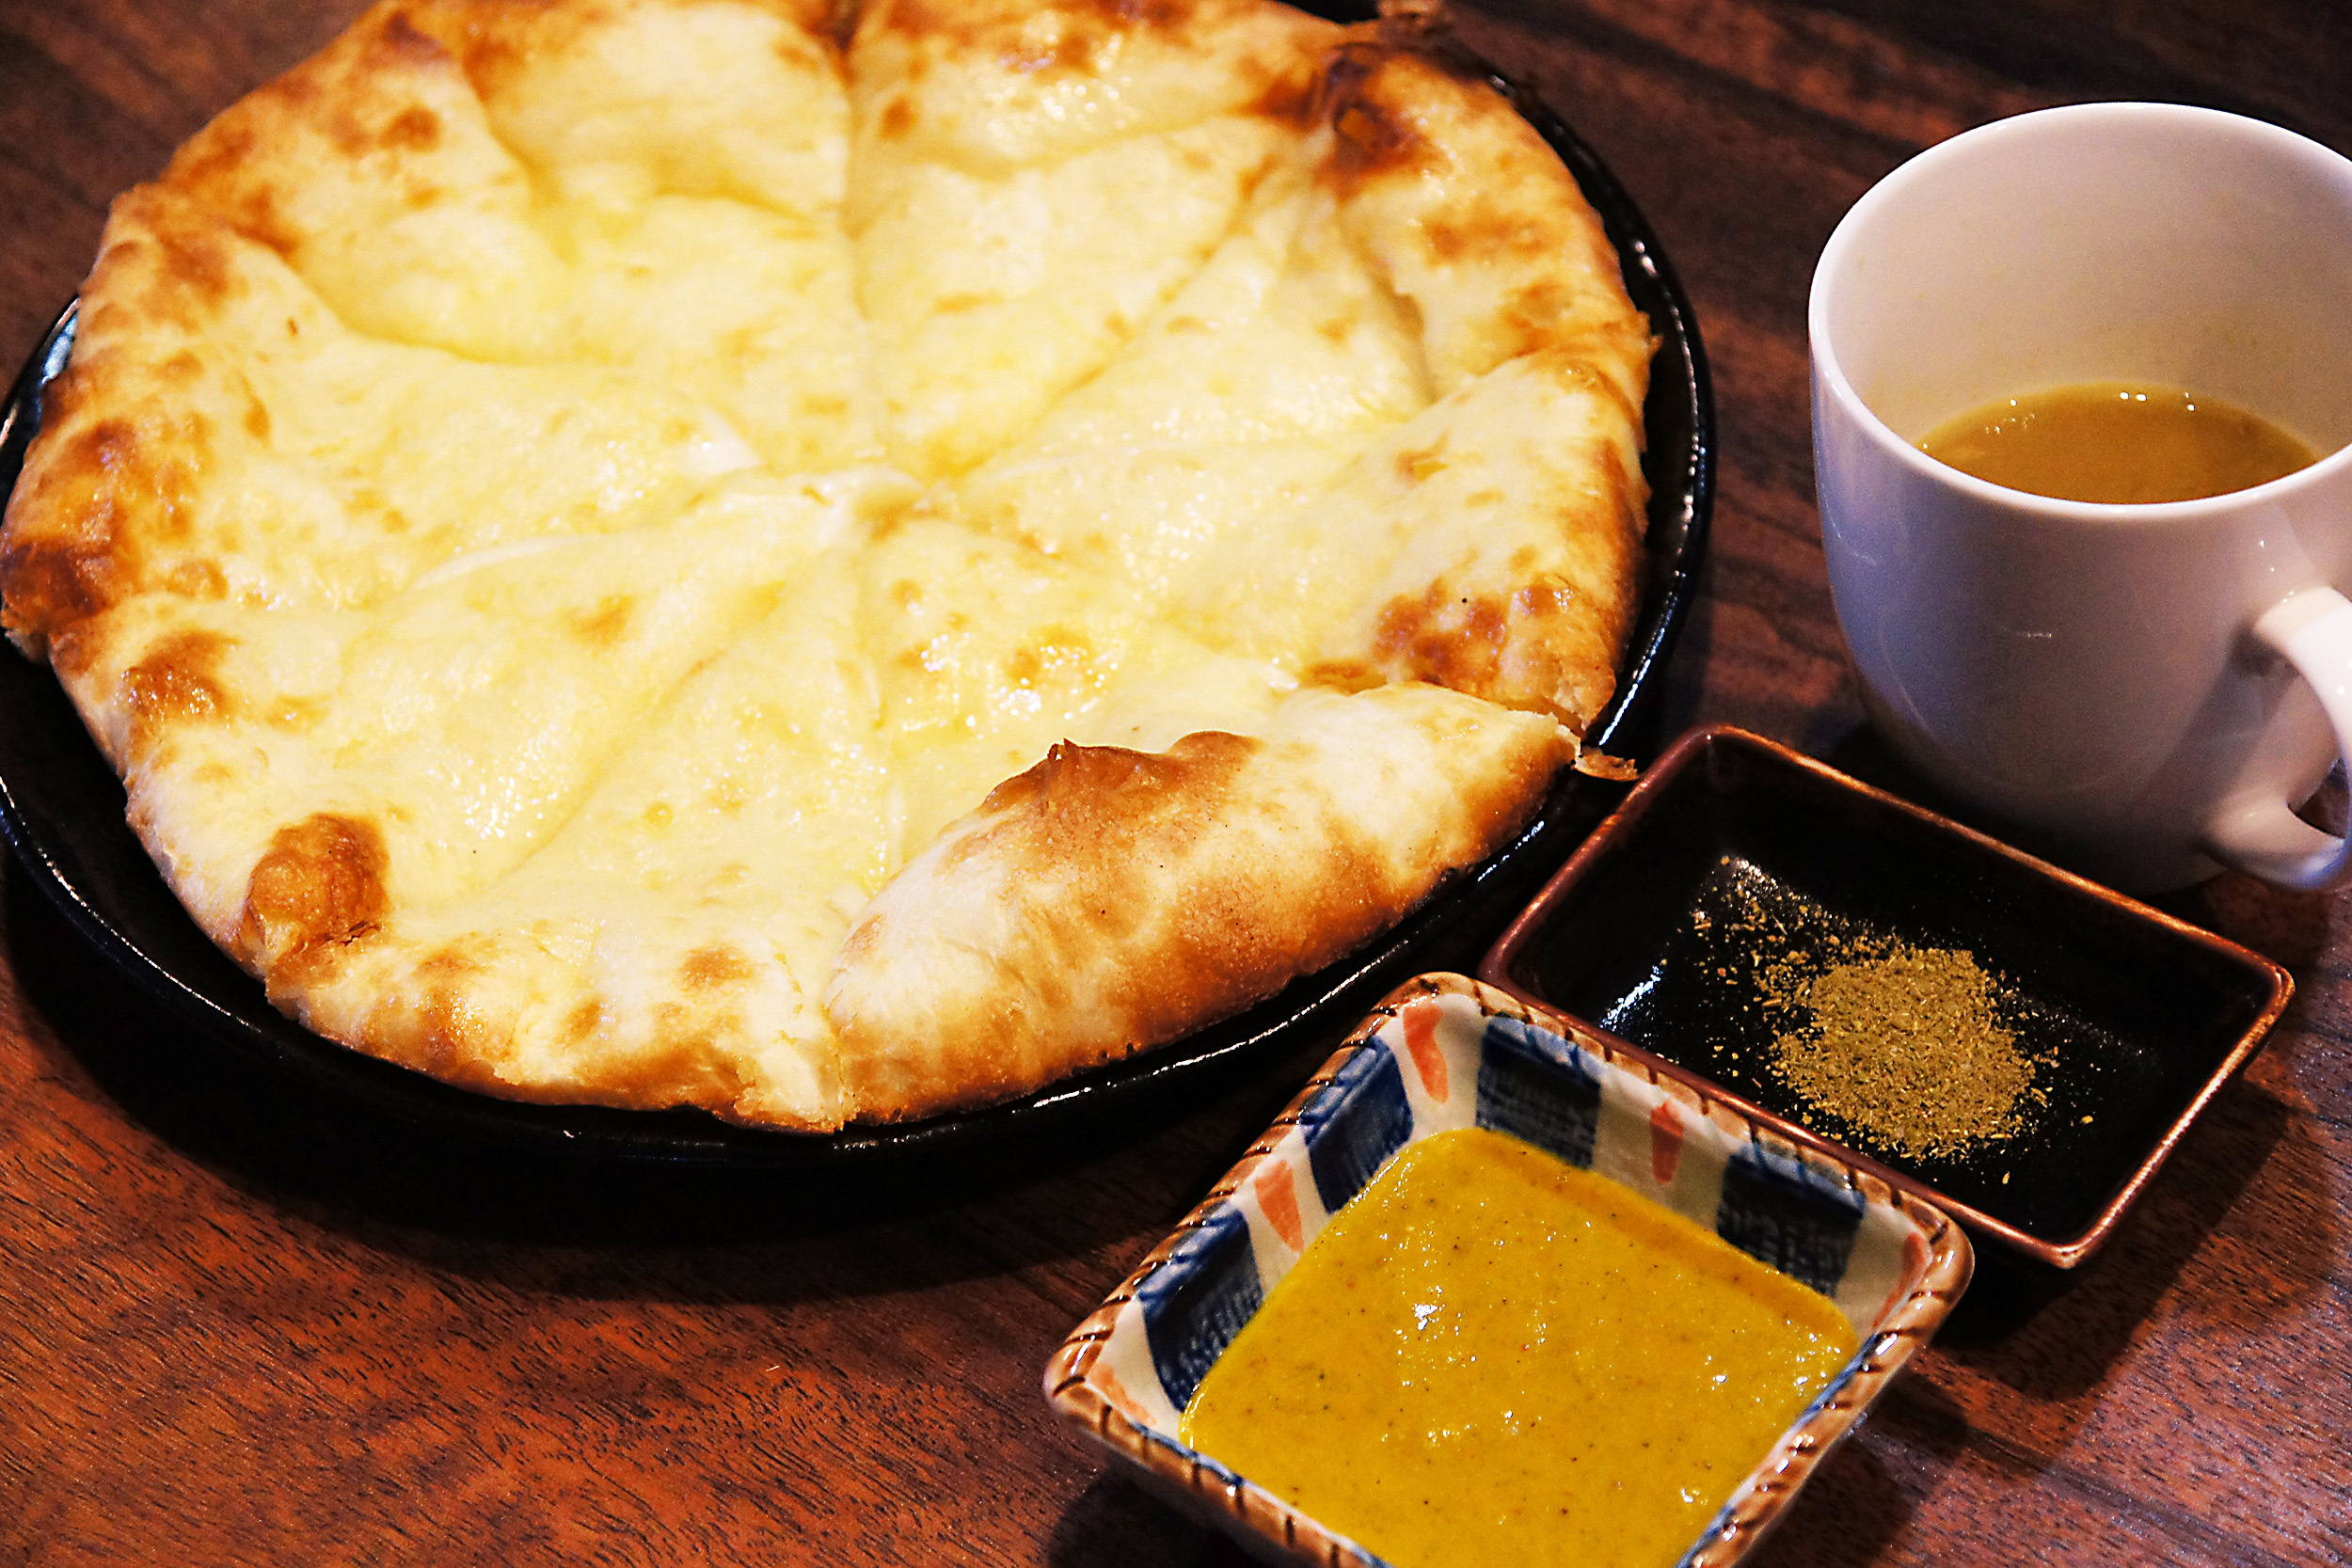 愛知県豊田市のインド料理店「SOKKYOナン屋」が
「ナン屋チーズナンセット2nd」を4月25日に販売開始